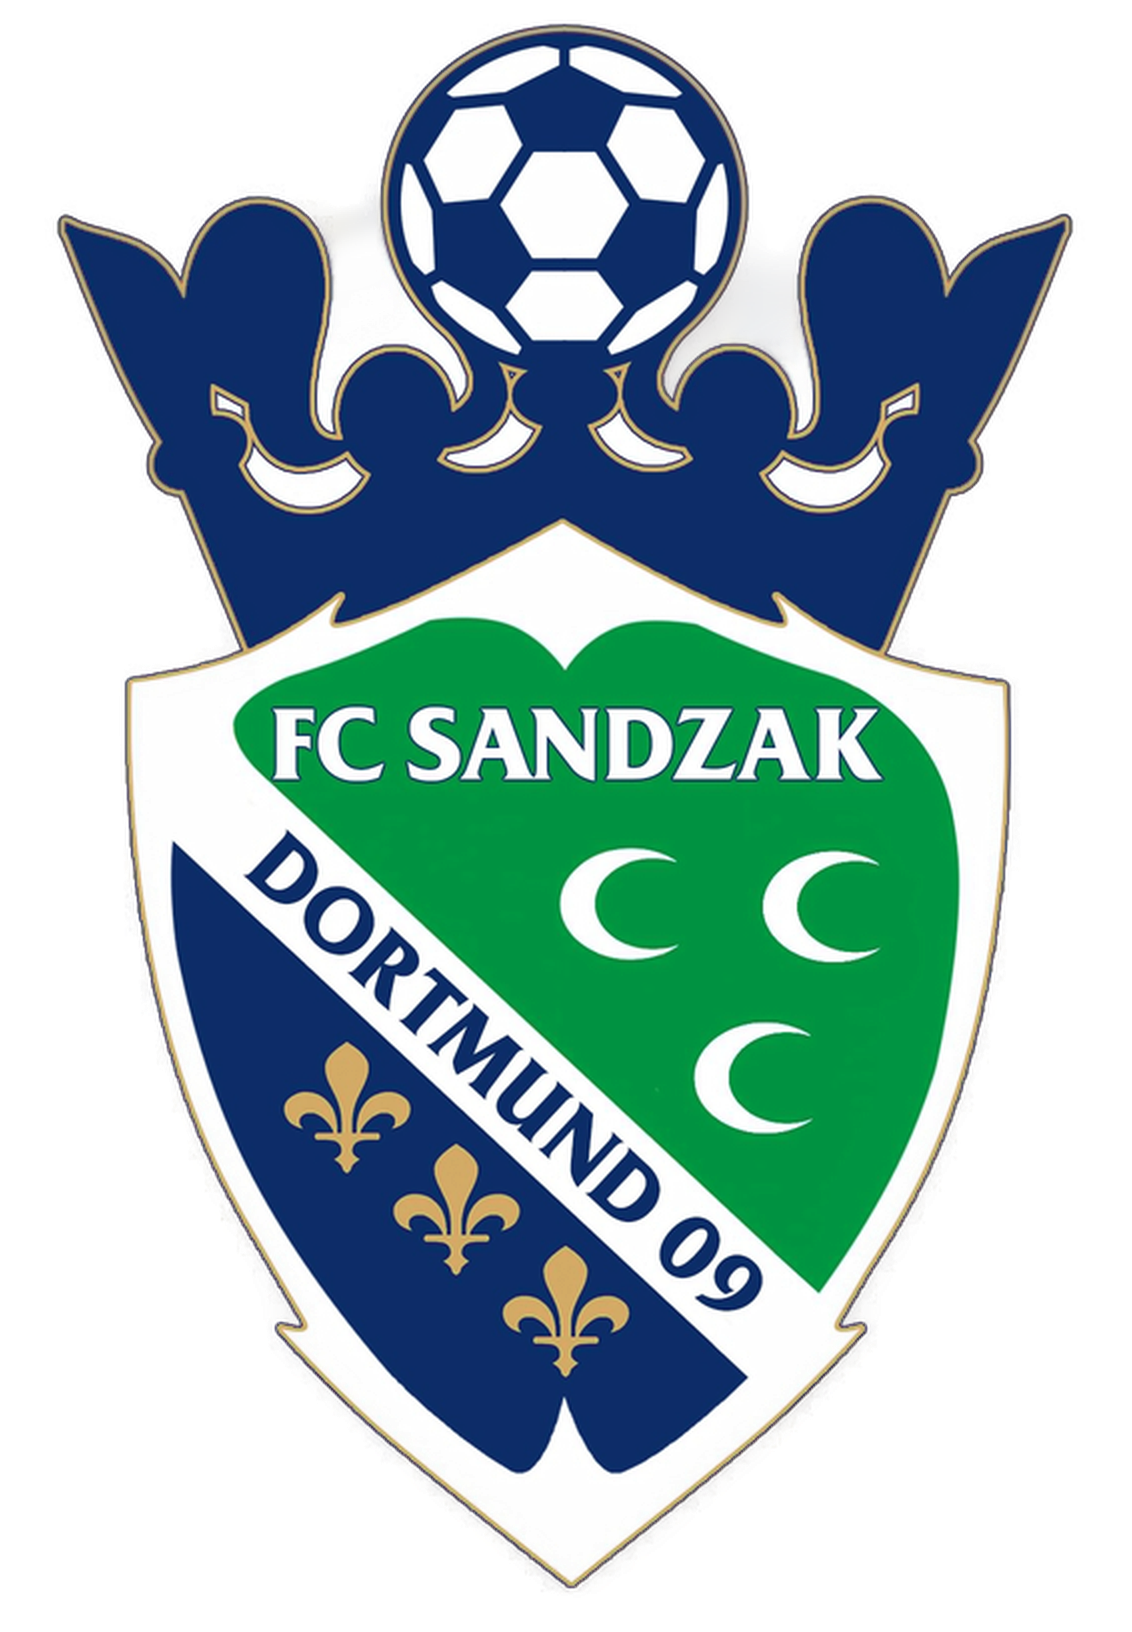 Wappen FC Sandzak Dortmund 2009 II  59838